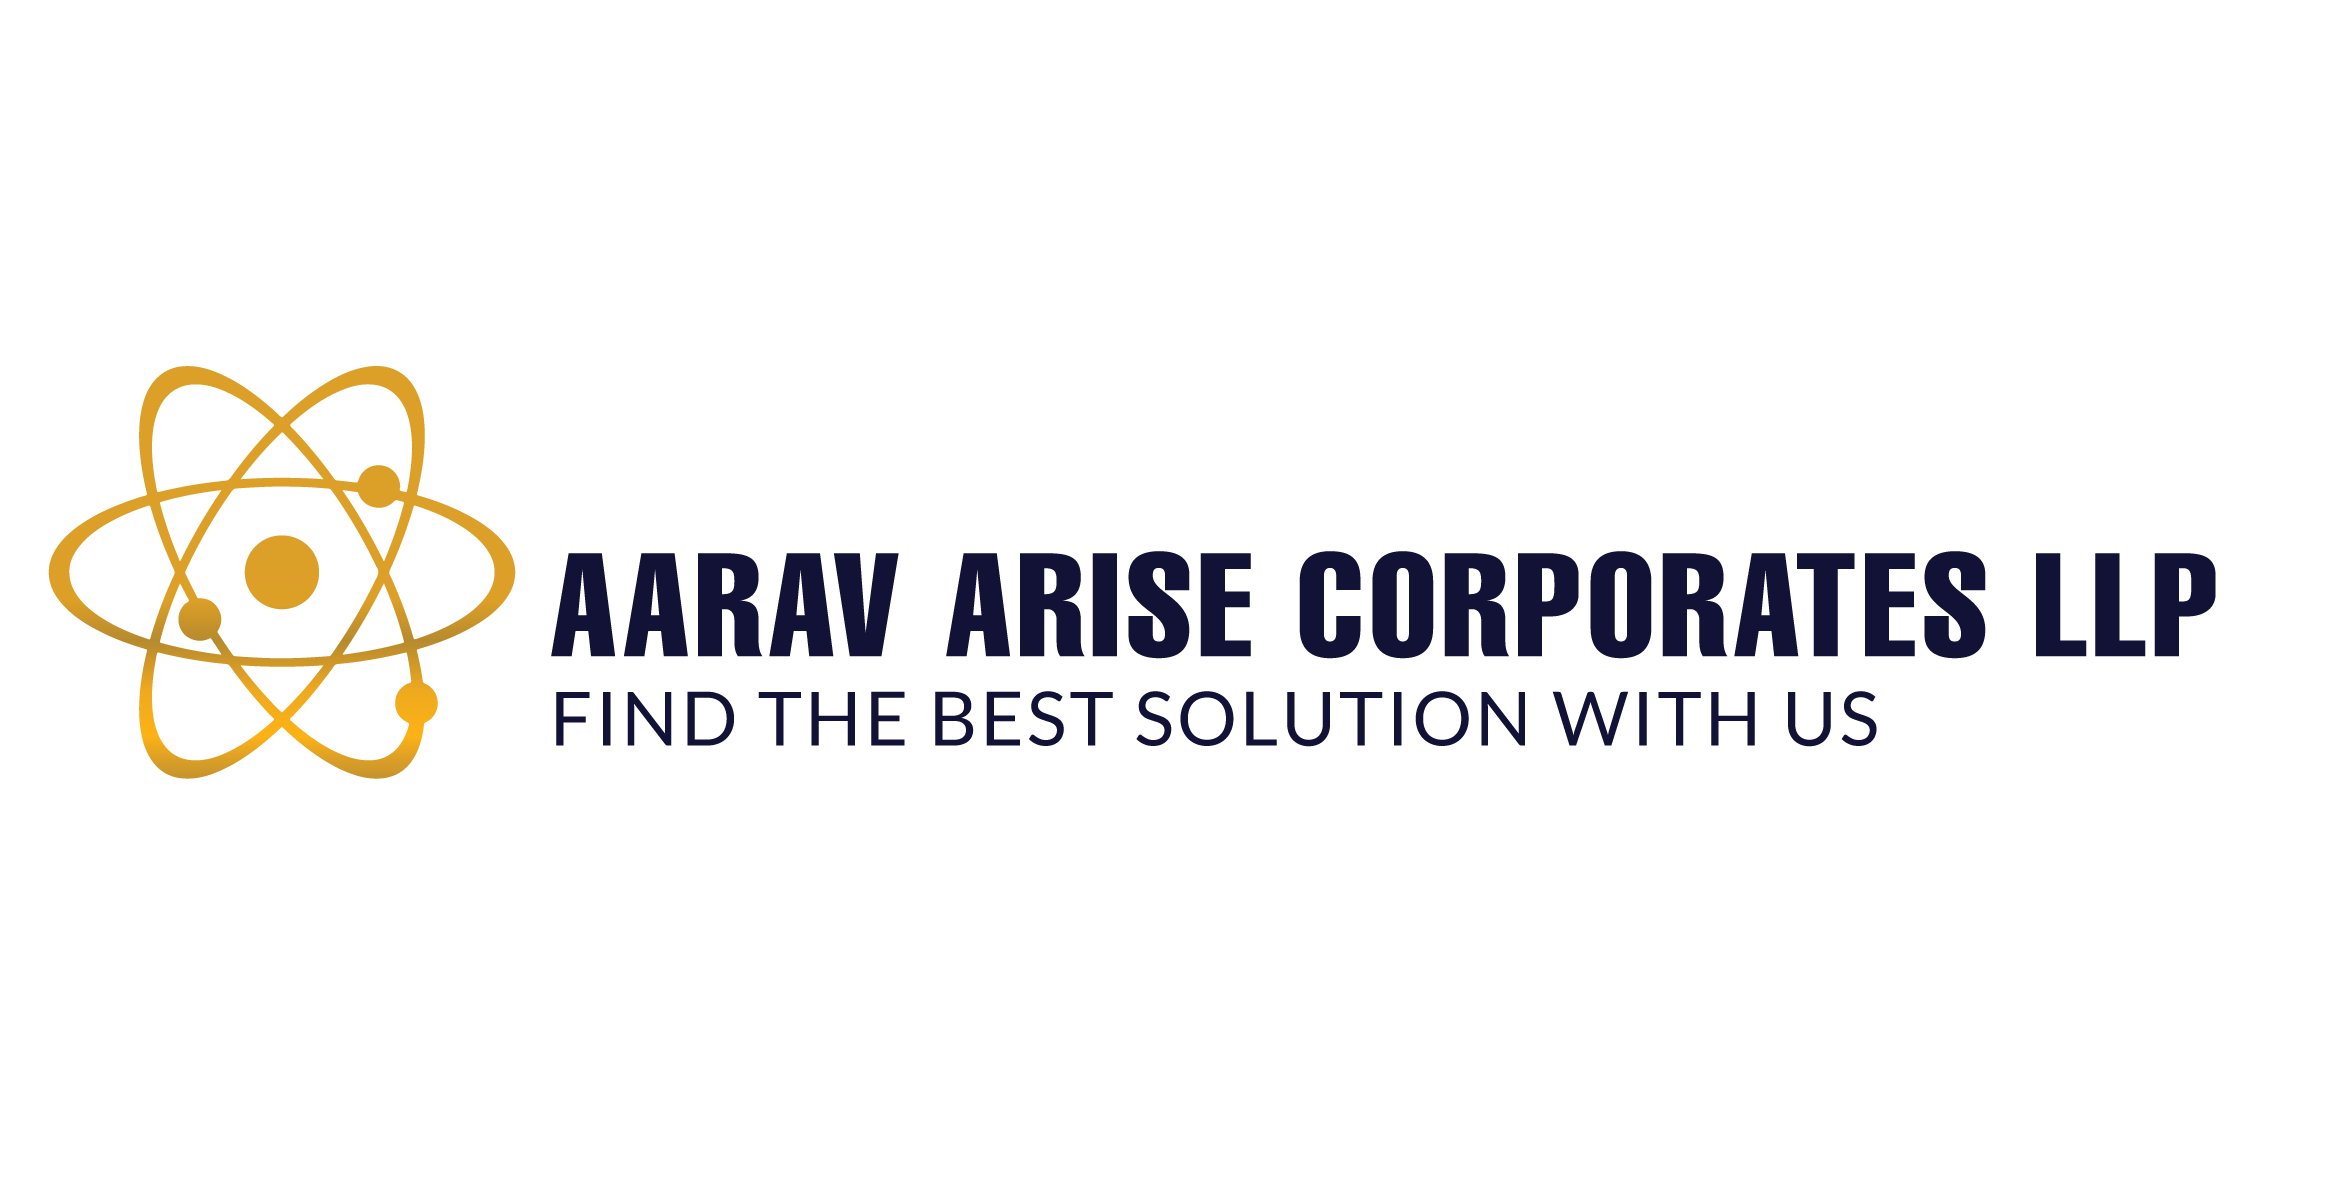 Aarav Industries